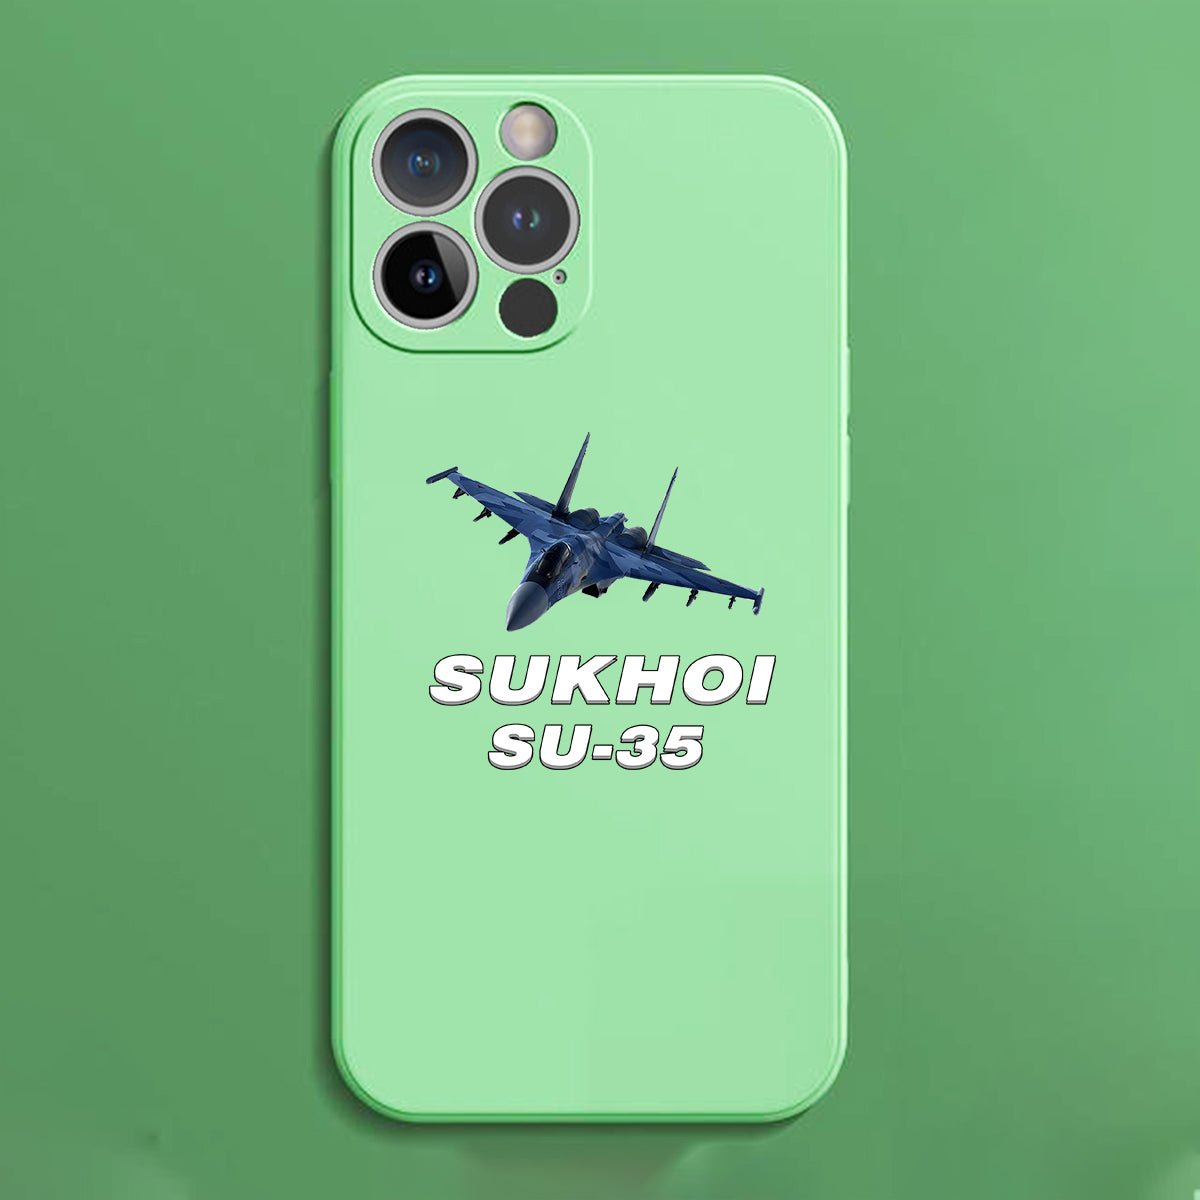 The Sukhoi SU-35 Designed Soft Silicone iPhone Cases